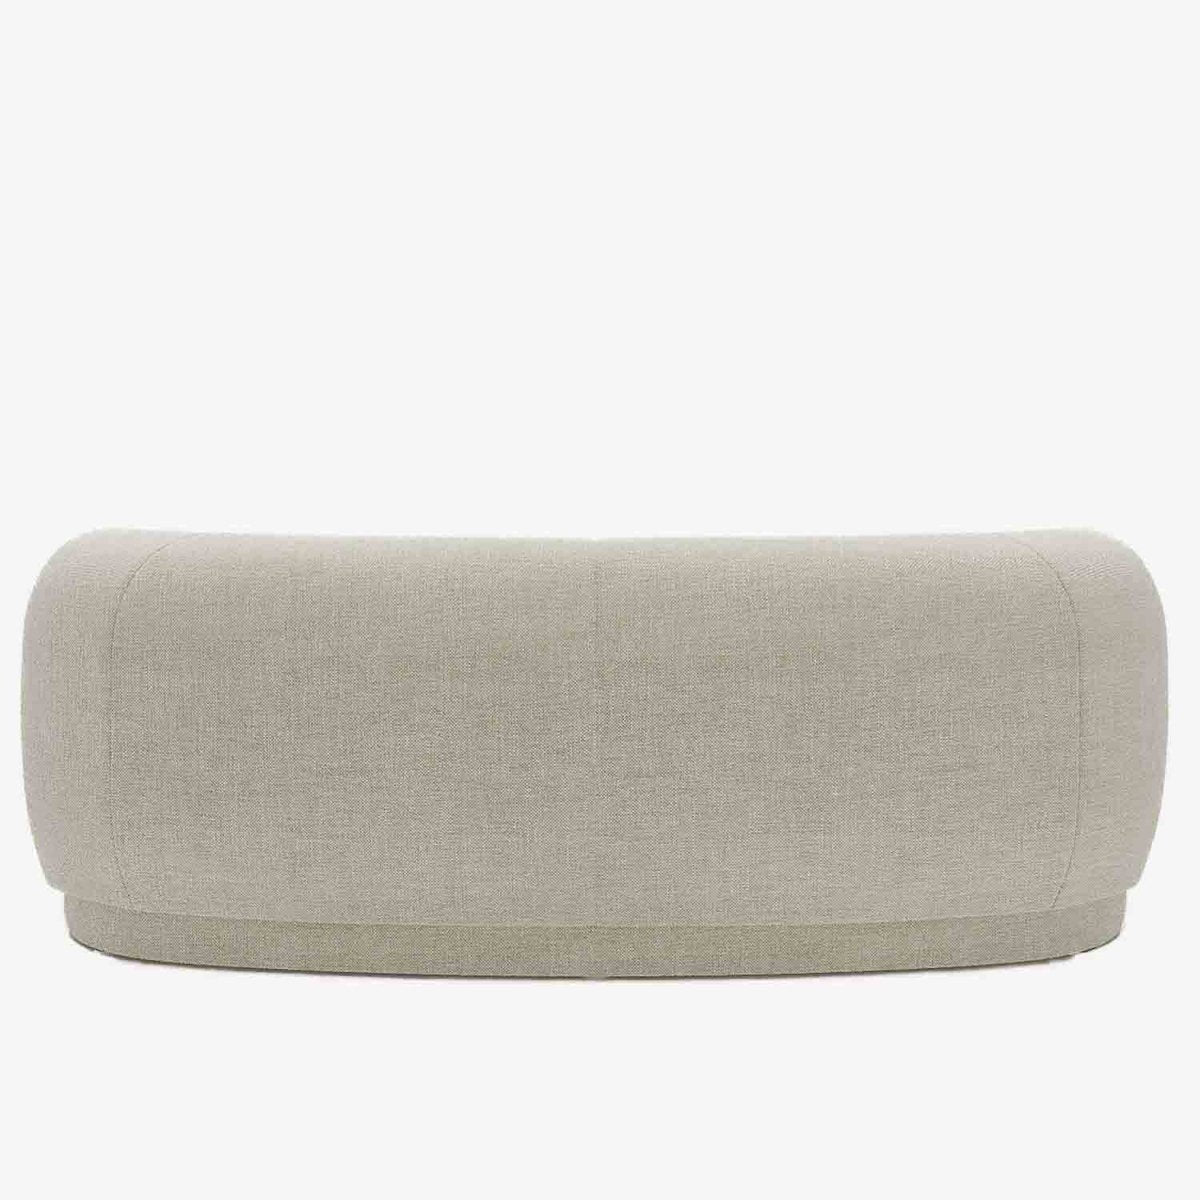 Canapé incurvé moderne en tissu beige - Potiron Paris, les canapés design de qualité pas chers